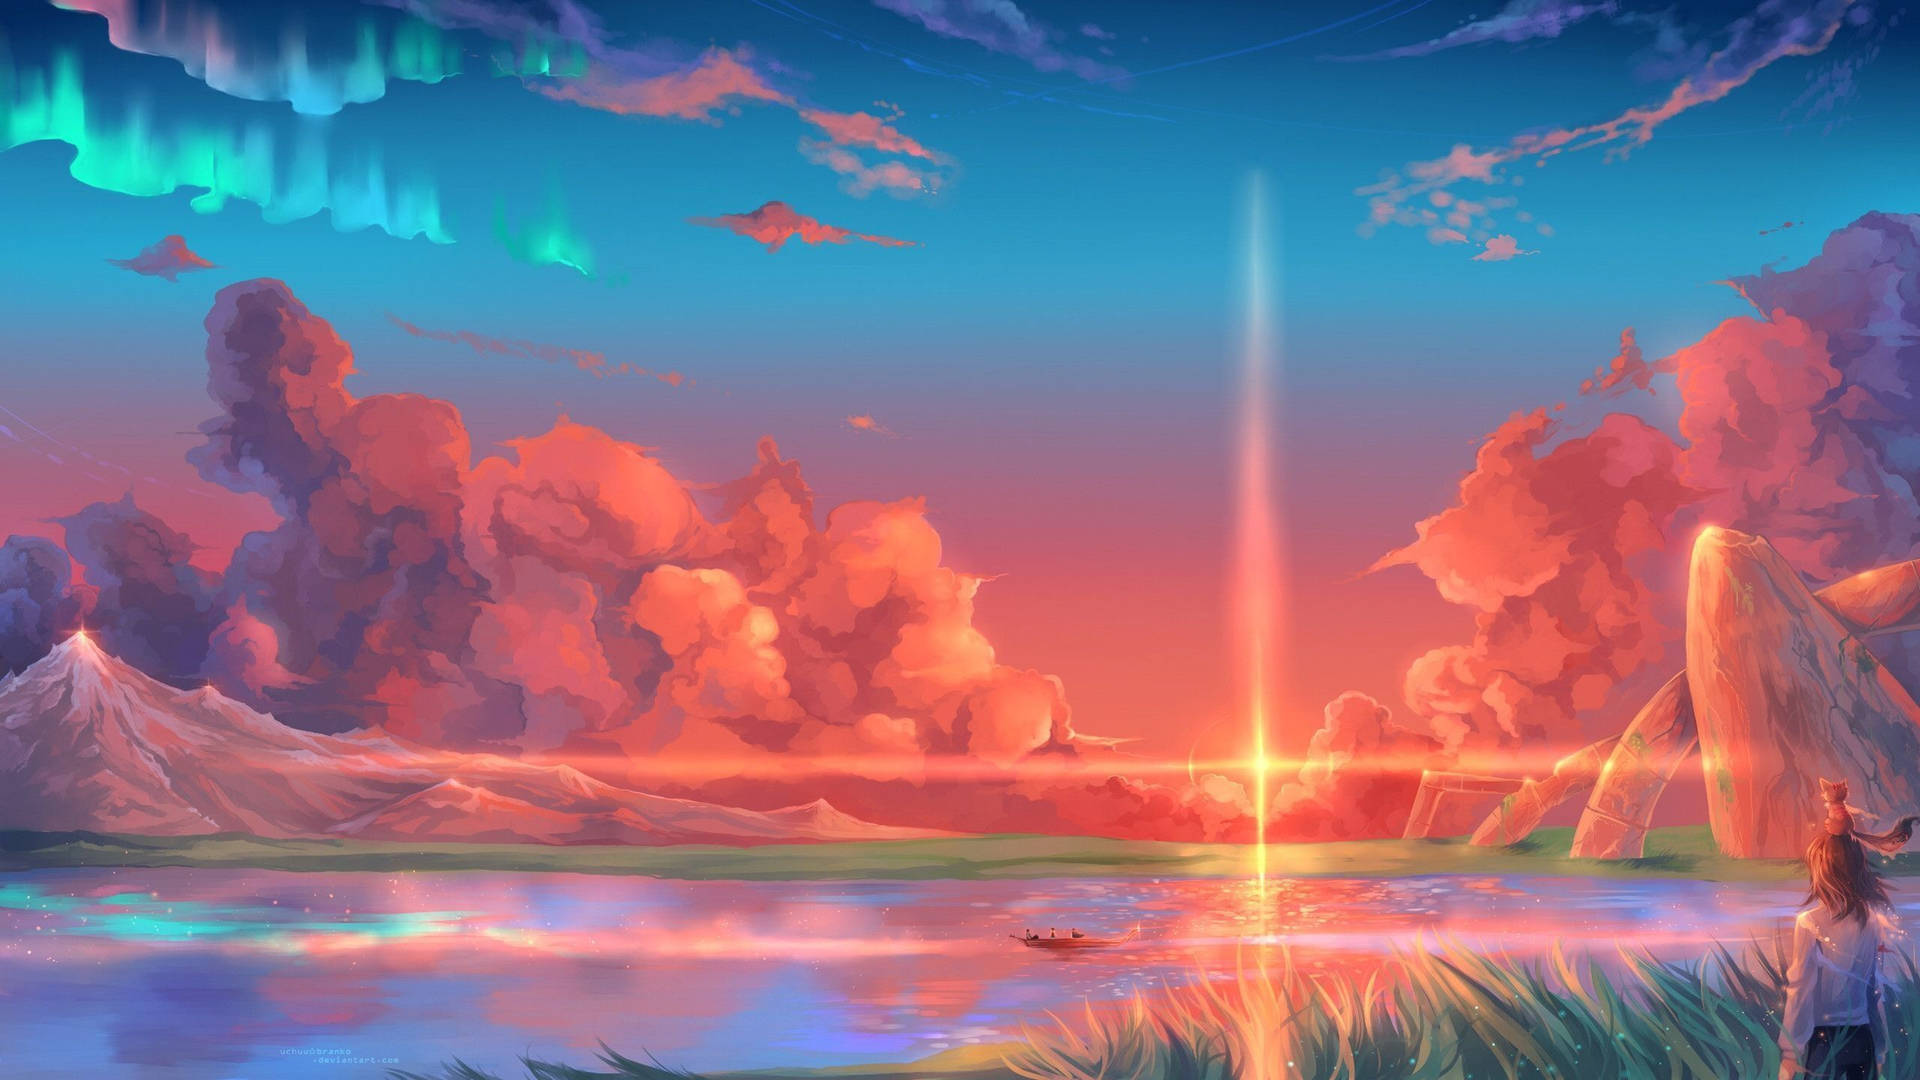 Sunset Illustration Macbook Pro Aesthetic Background